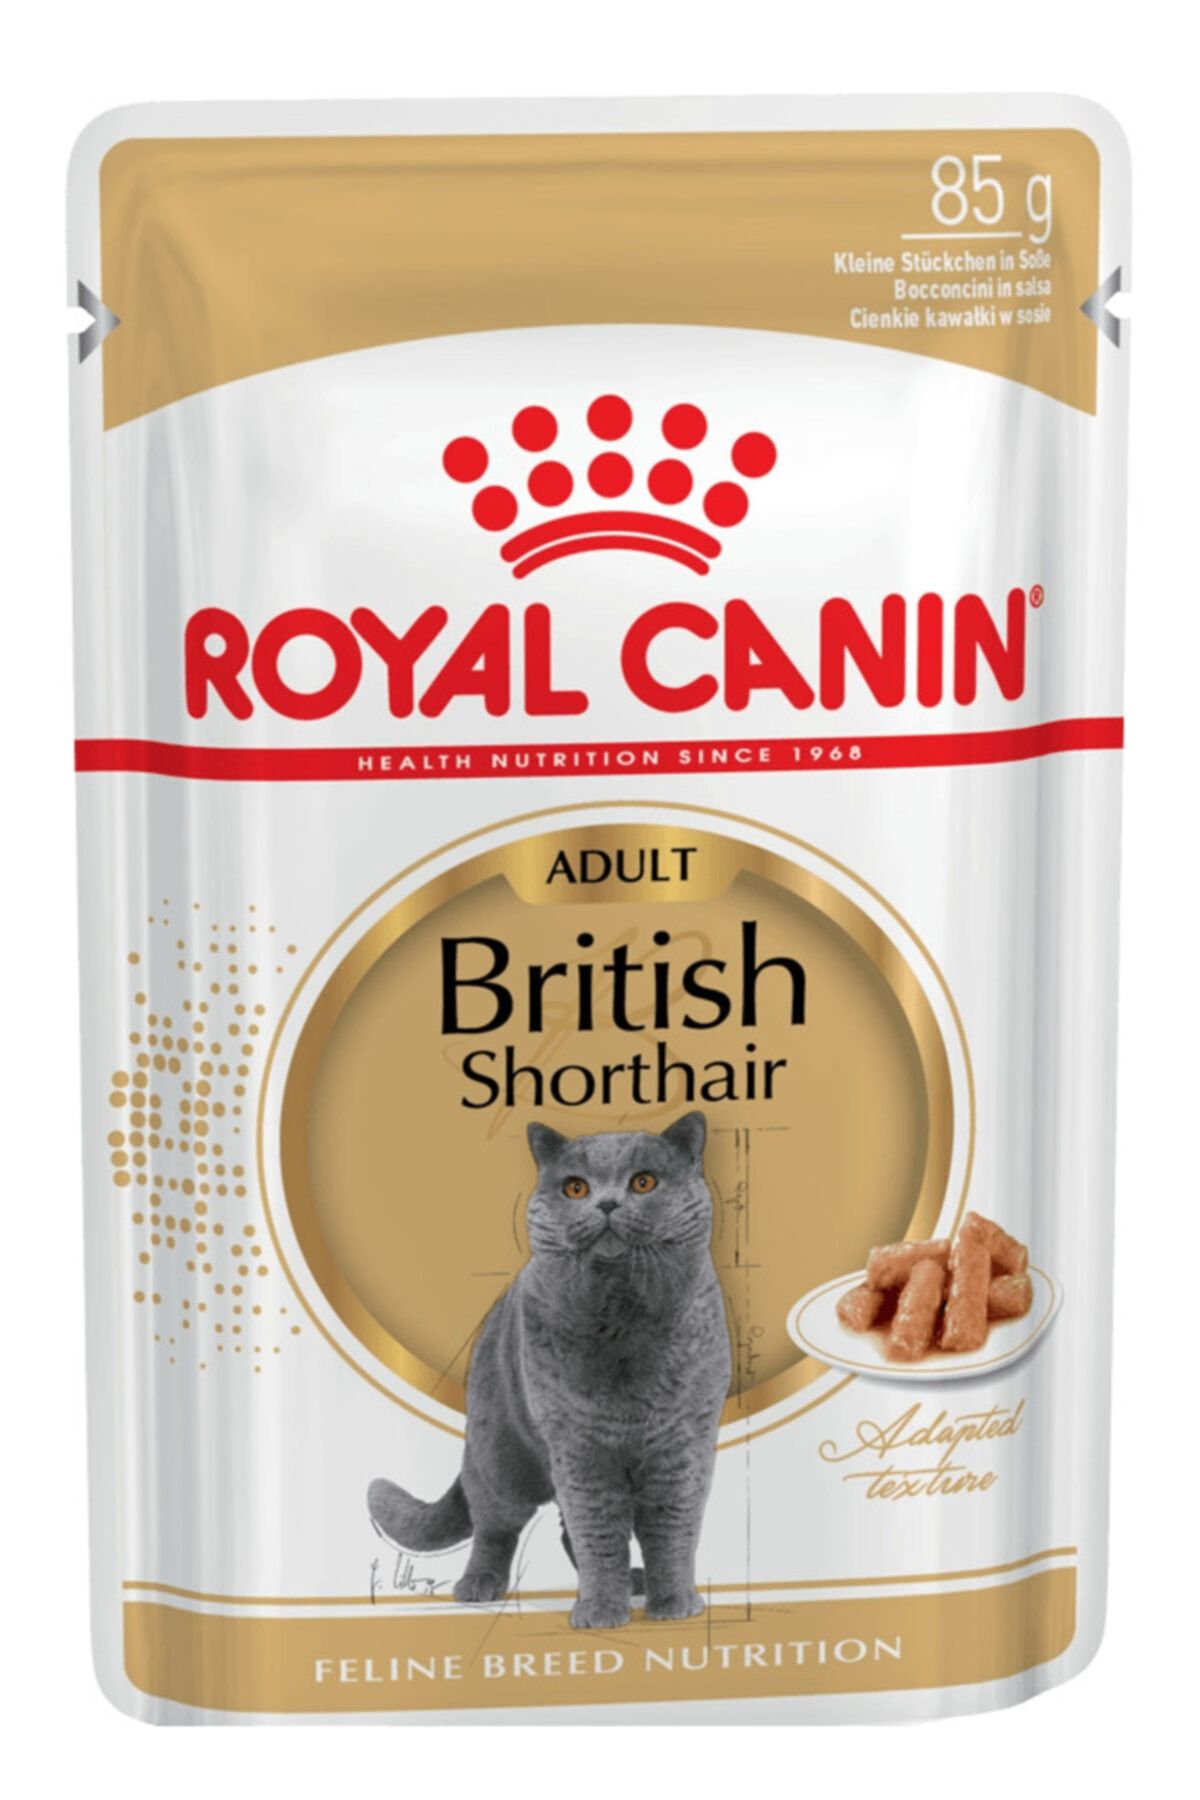 Royal Canin 8 Adet British Shorthair Yetişkin Kedi Yaş Maması 85 Gr